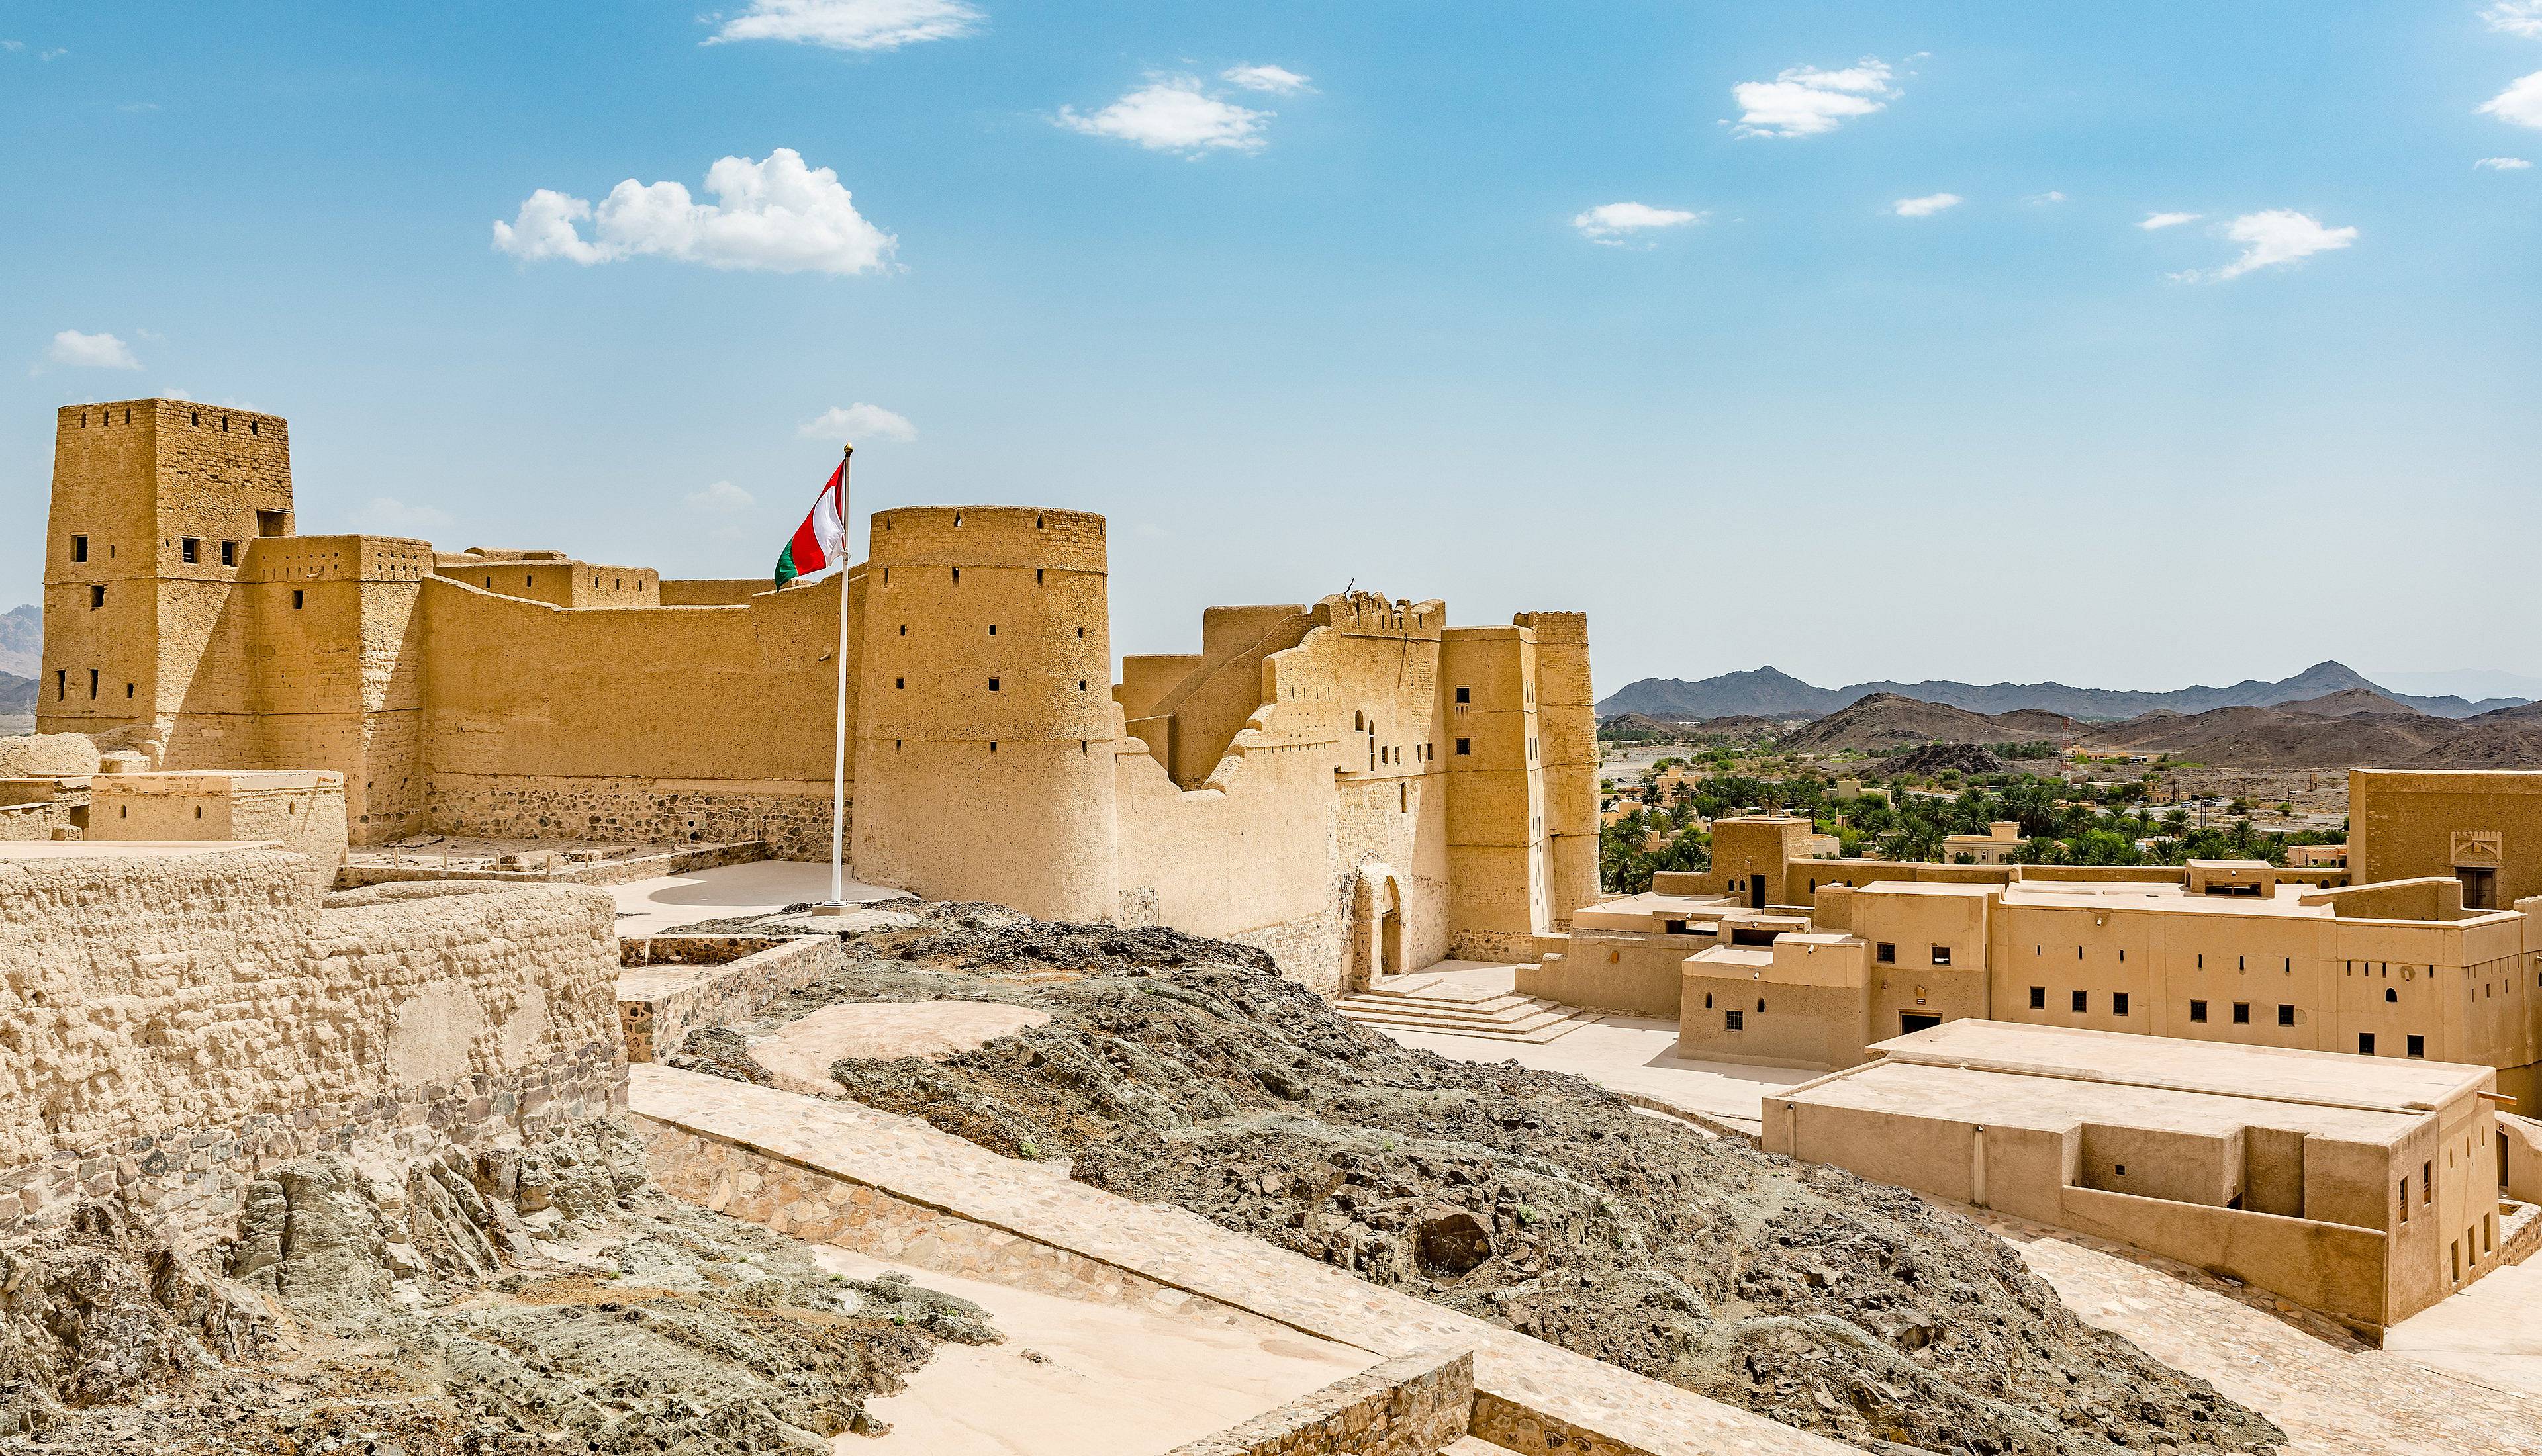 Eine Woche nach Oman - Reise jetzt individuell gestalten